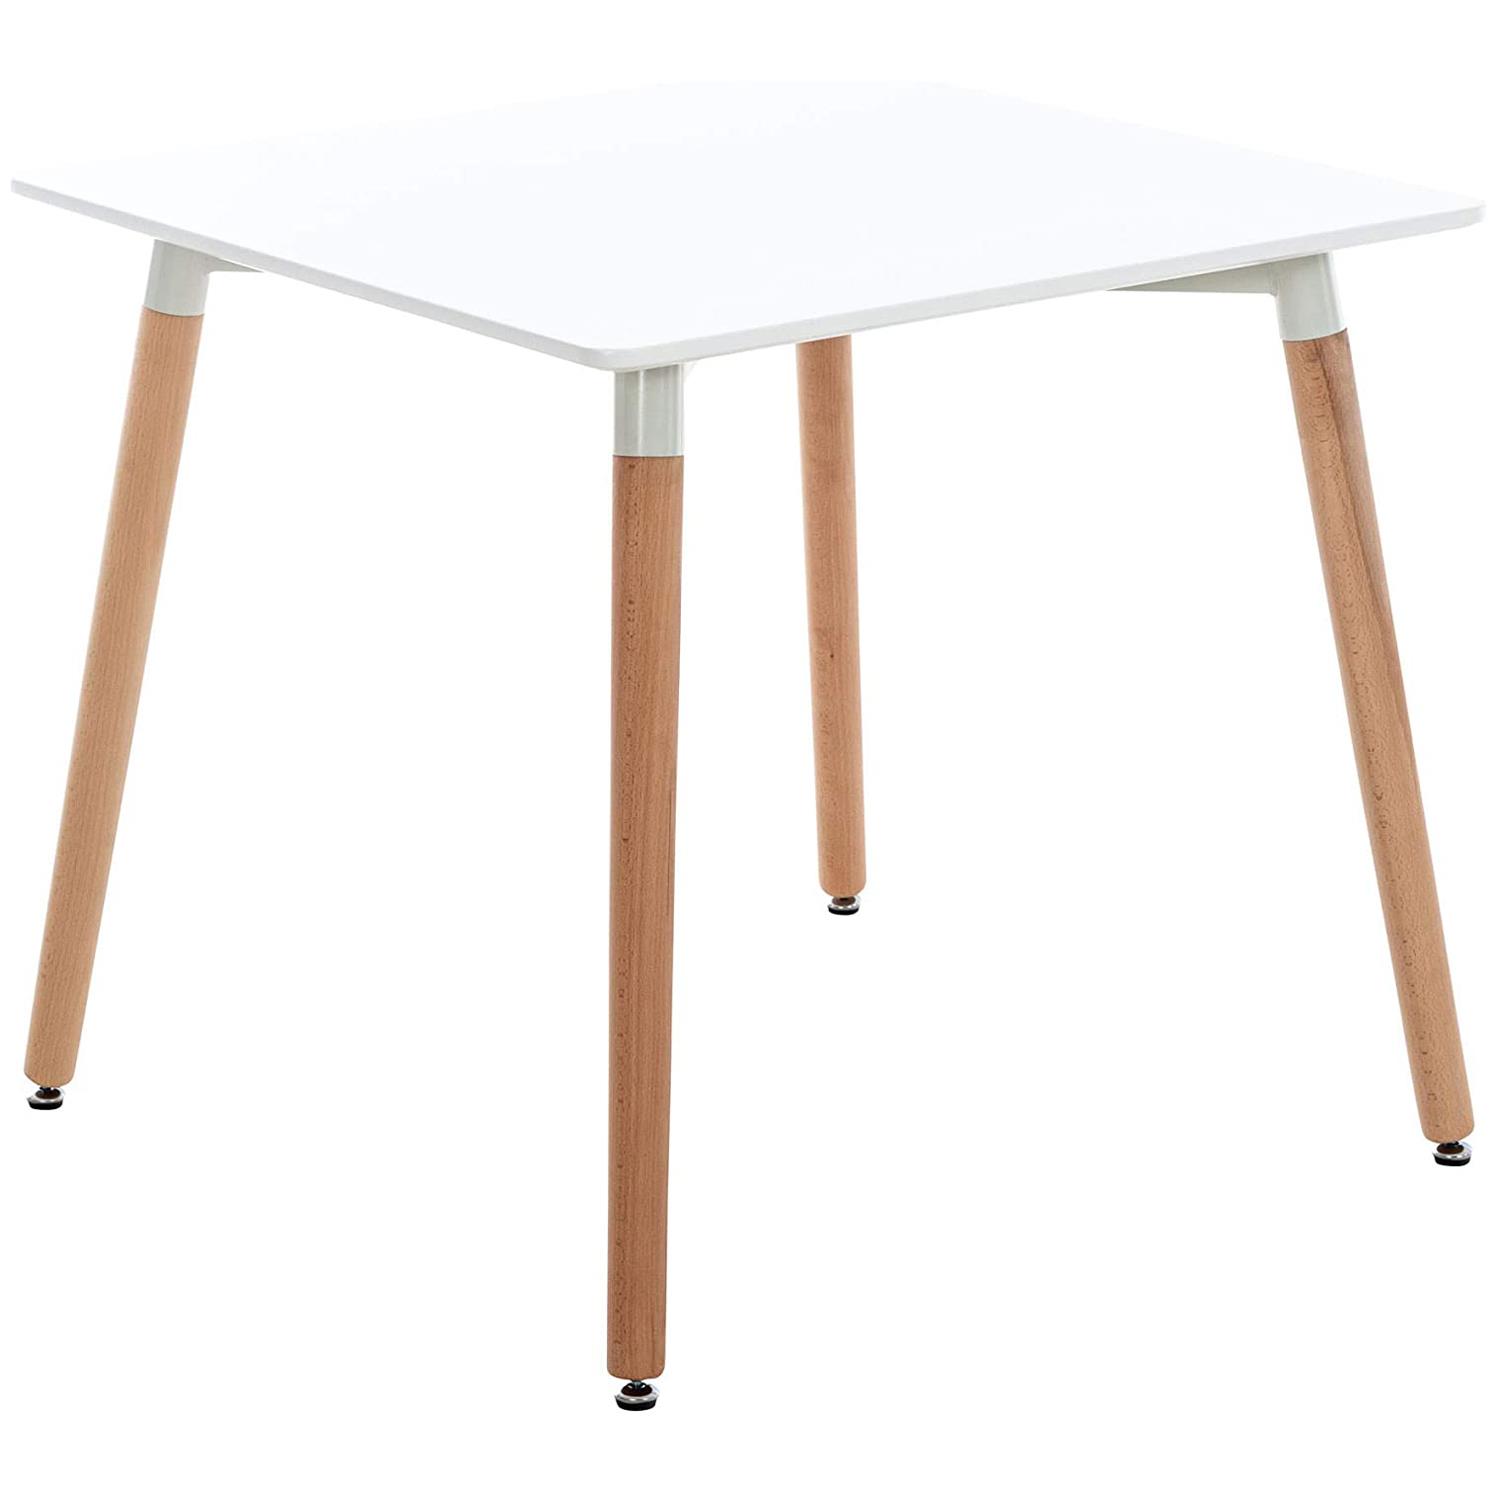 Tavolo da Appoggio BERGER, 80x80x75cm, Stile Nordico, in Legno, Ripiano Bianco